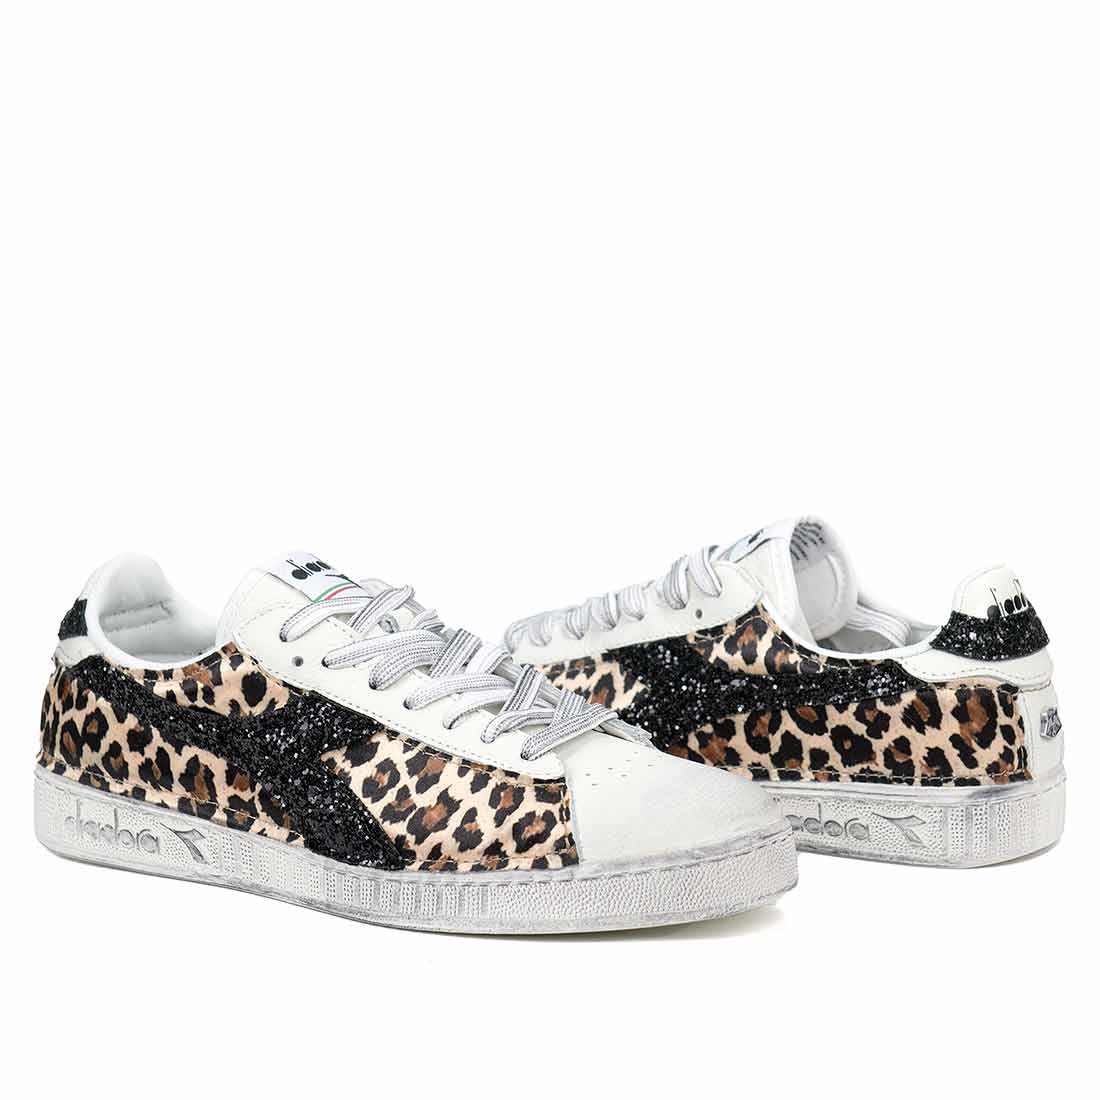 scarpe diadora leopardate e glitter nero